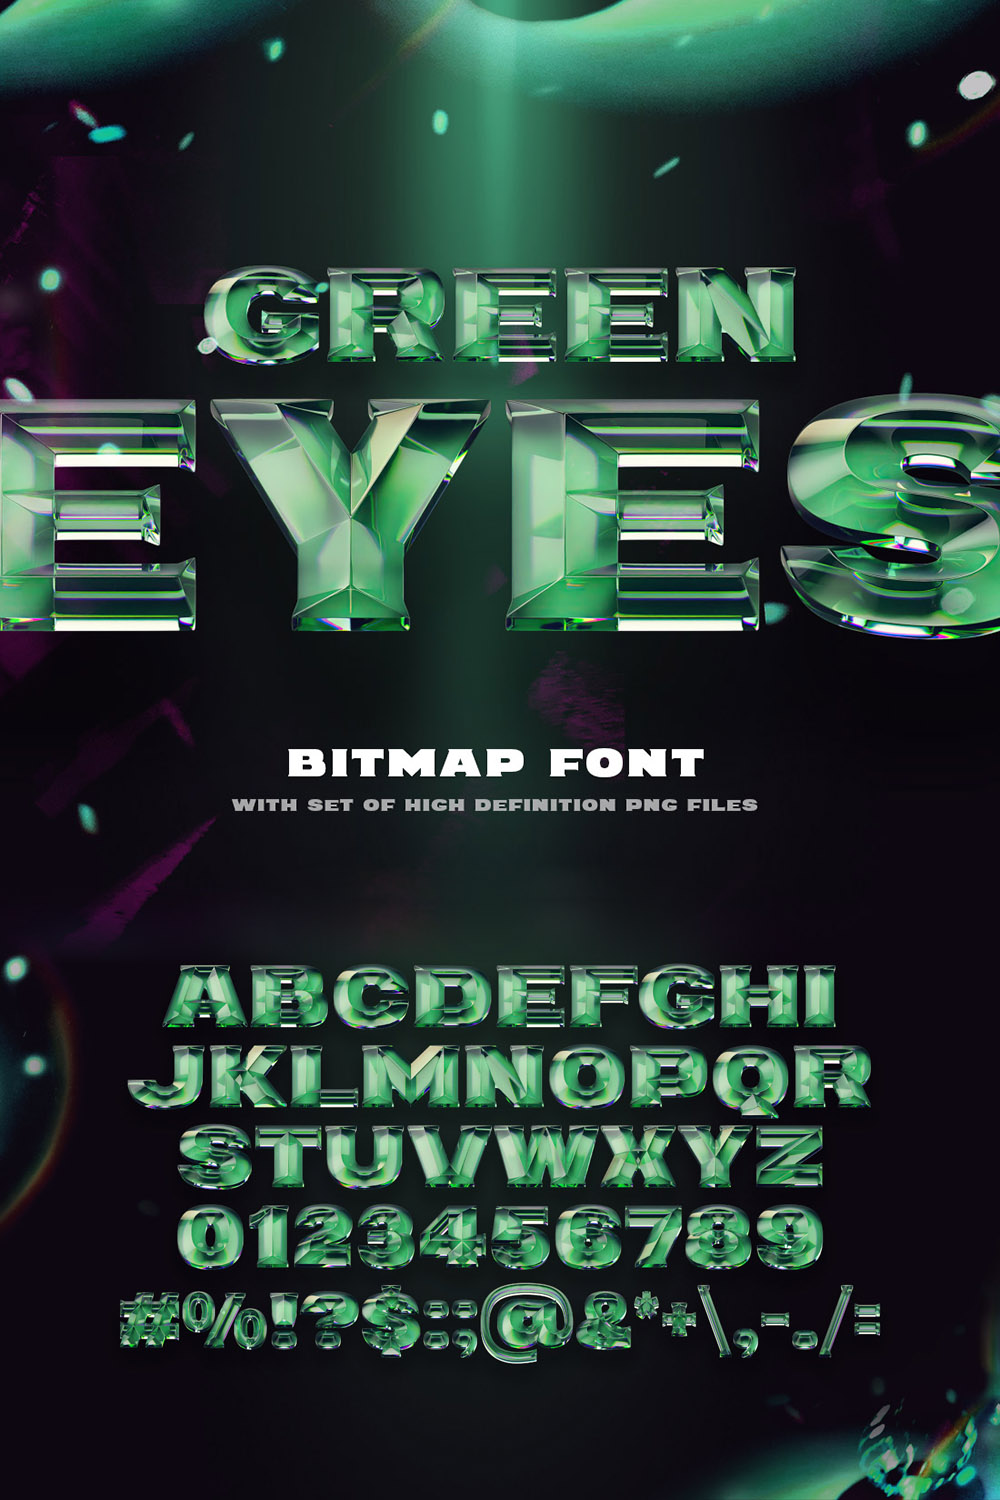 Green Eyes Bitmap Color Font pinterest image.